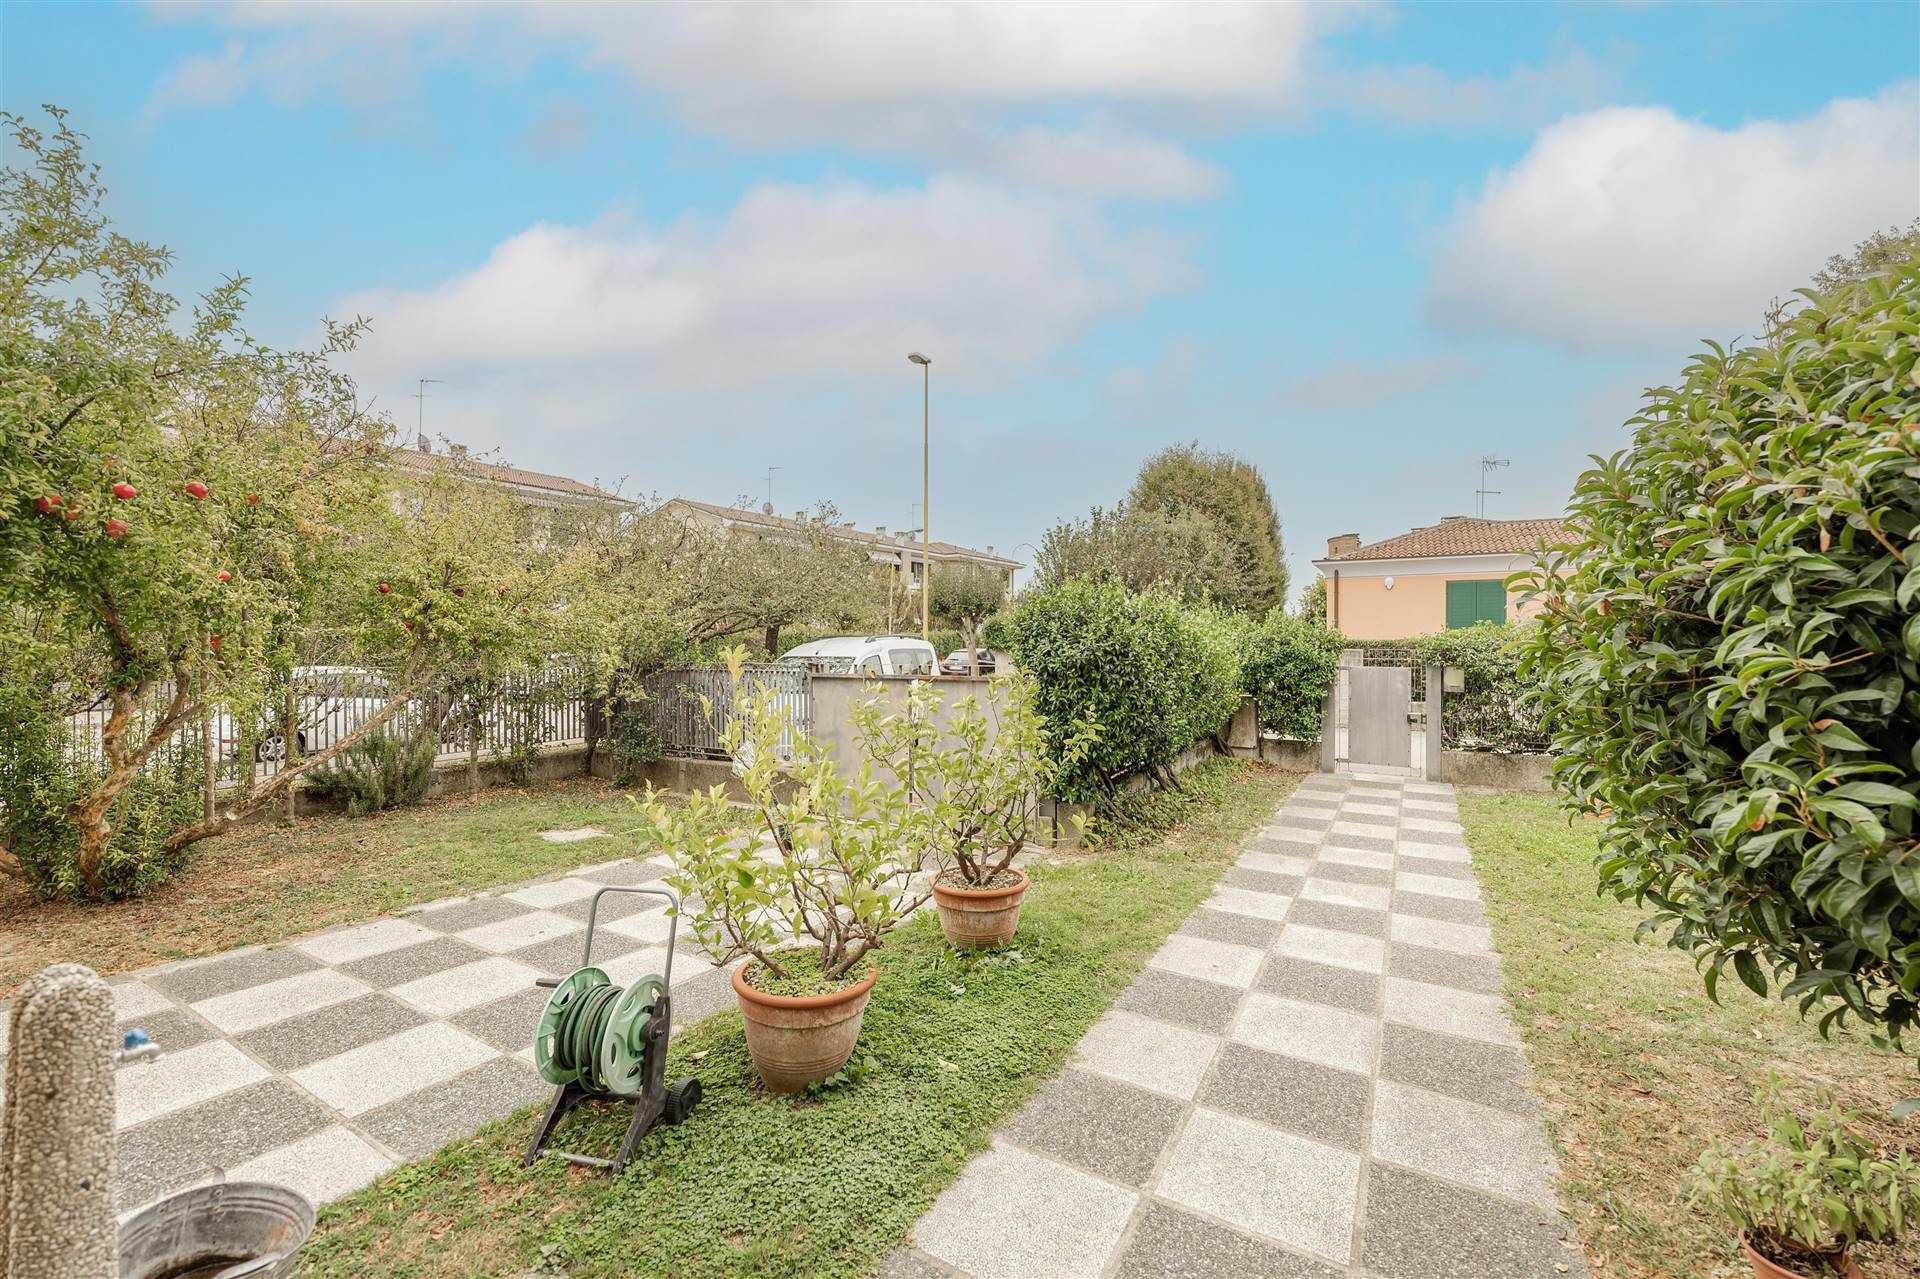 Villa a Schiera in vendita a Mirano, 8 locali, prezzo € 330.000 | PortaleAgenzieImmobiliari.it